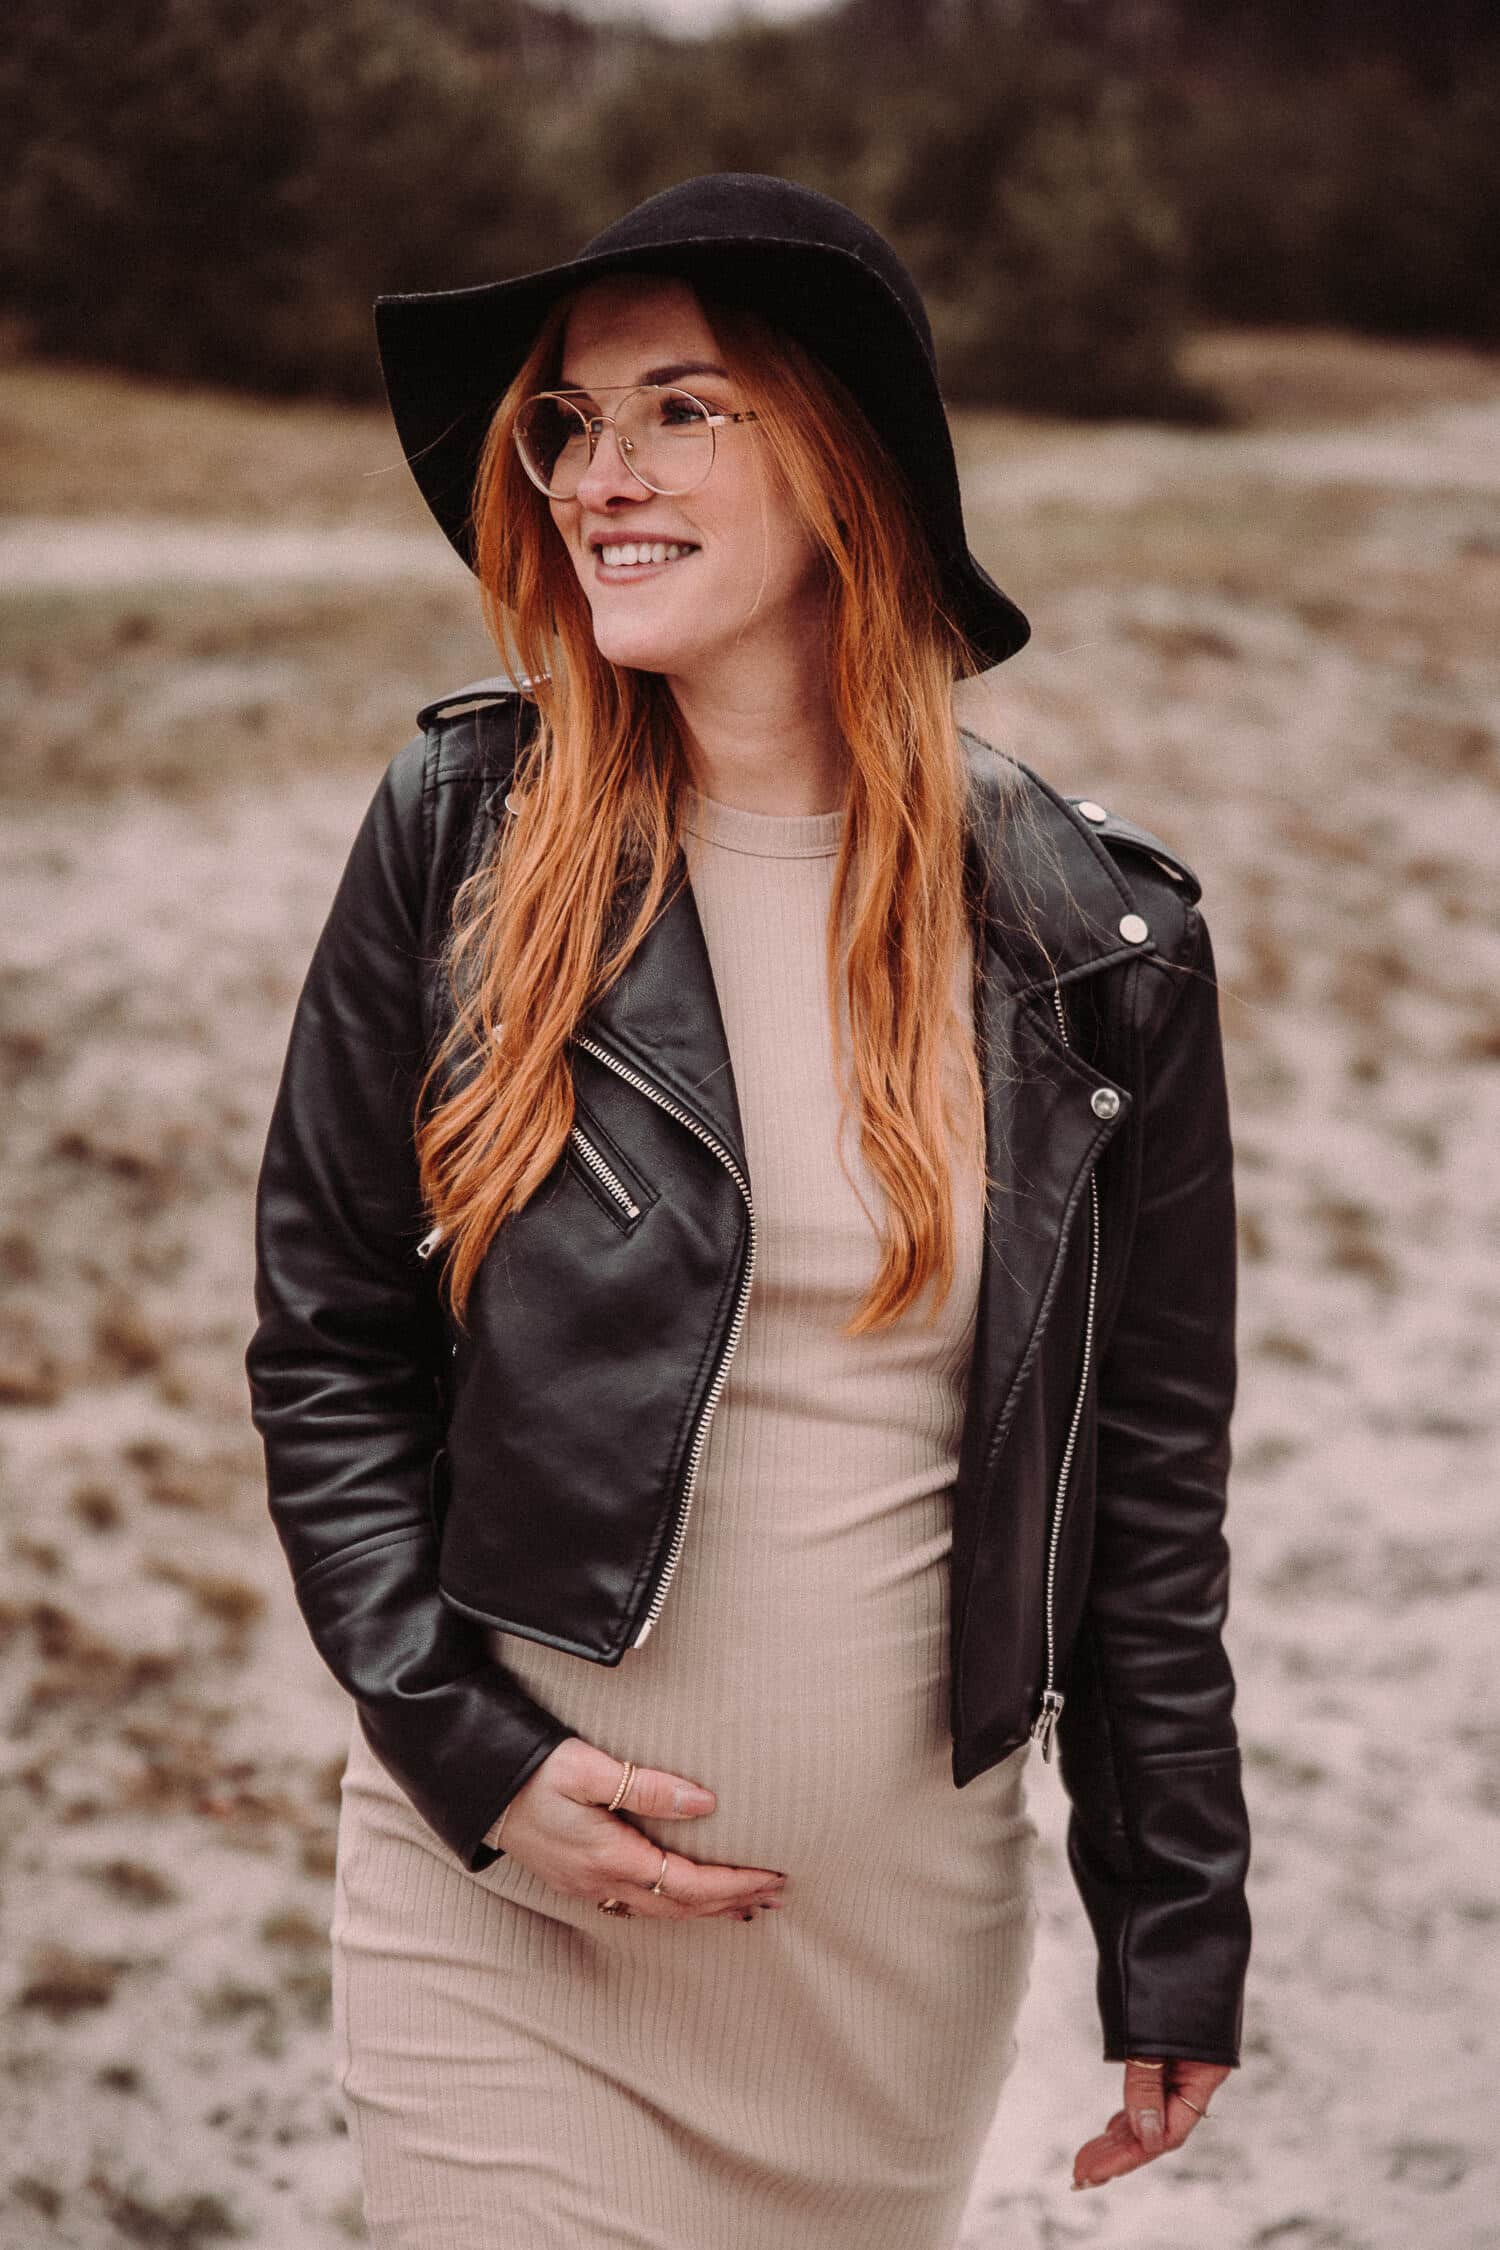 zwangerschapsfotograaf om jullie zwangerschap vast te leggen omstreken limburg